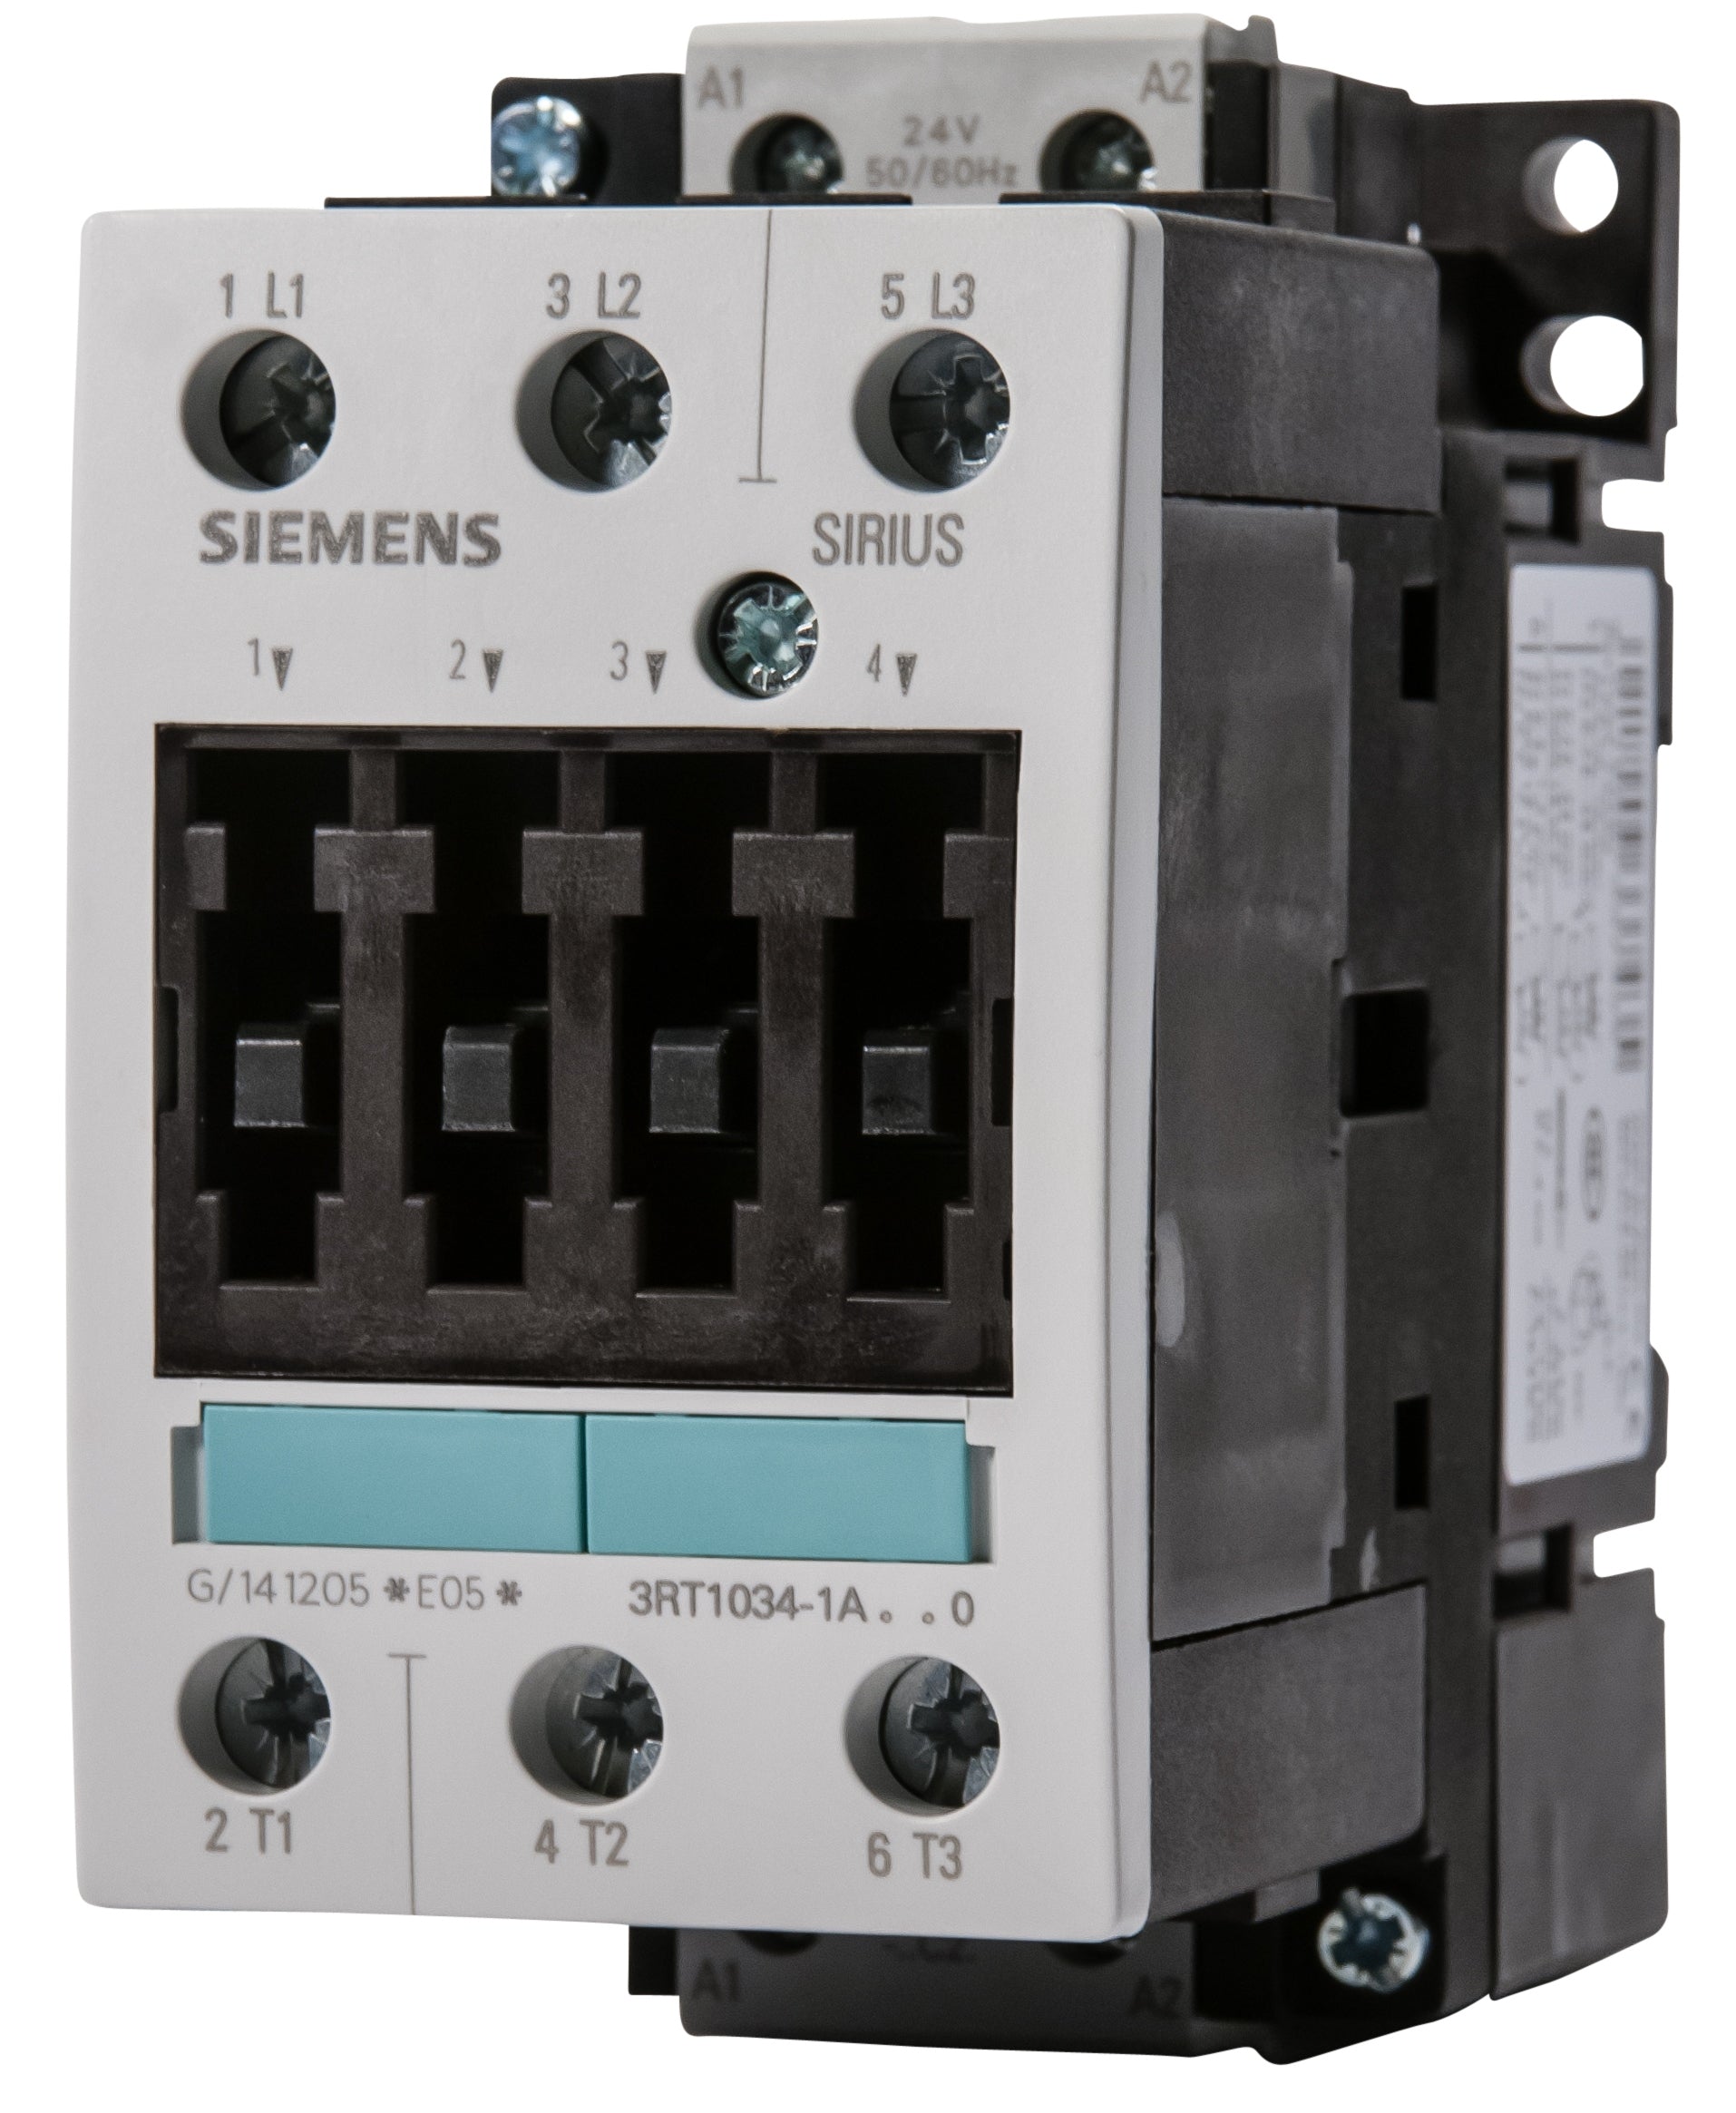 Contactor Bobina Siemens 3RT1026-1A..0